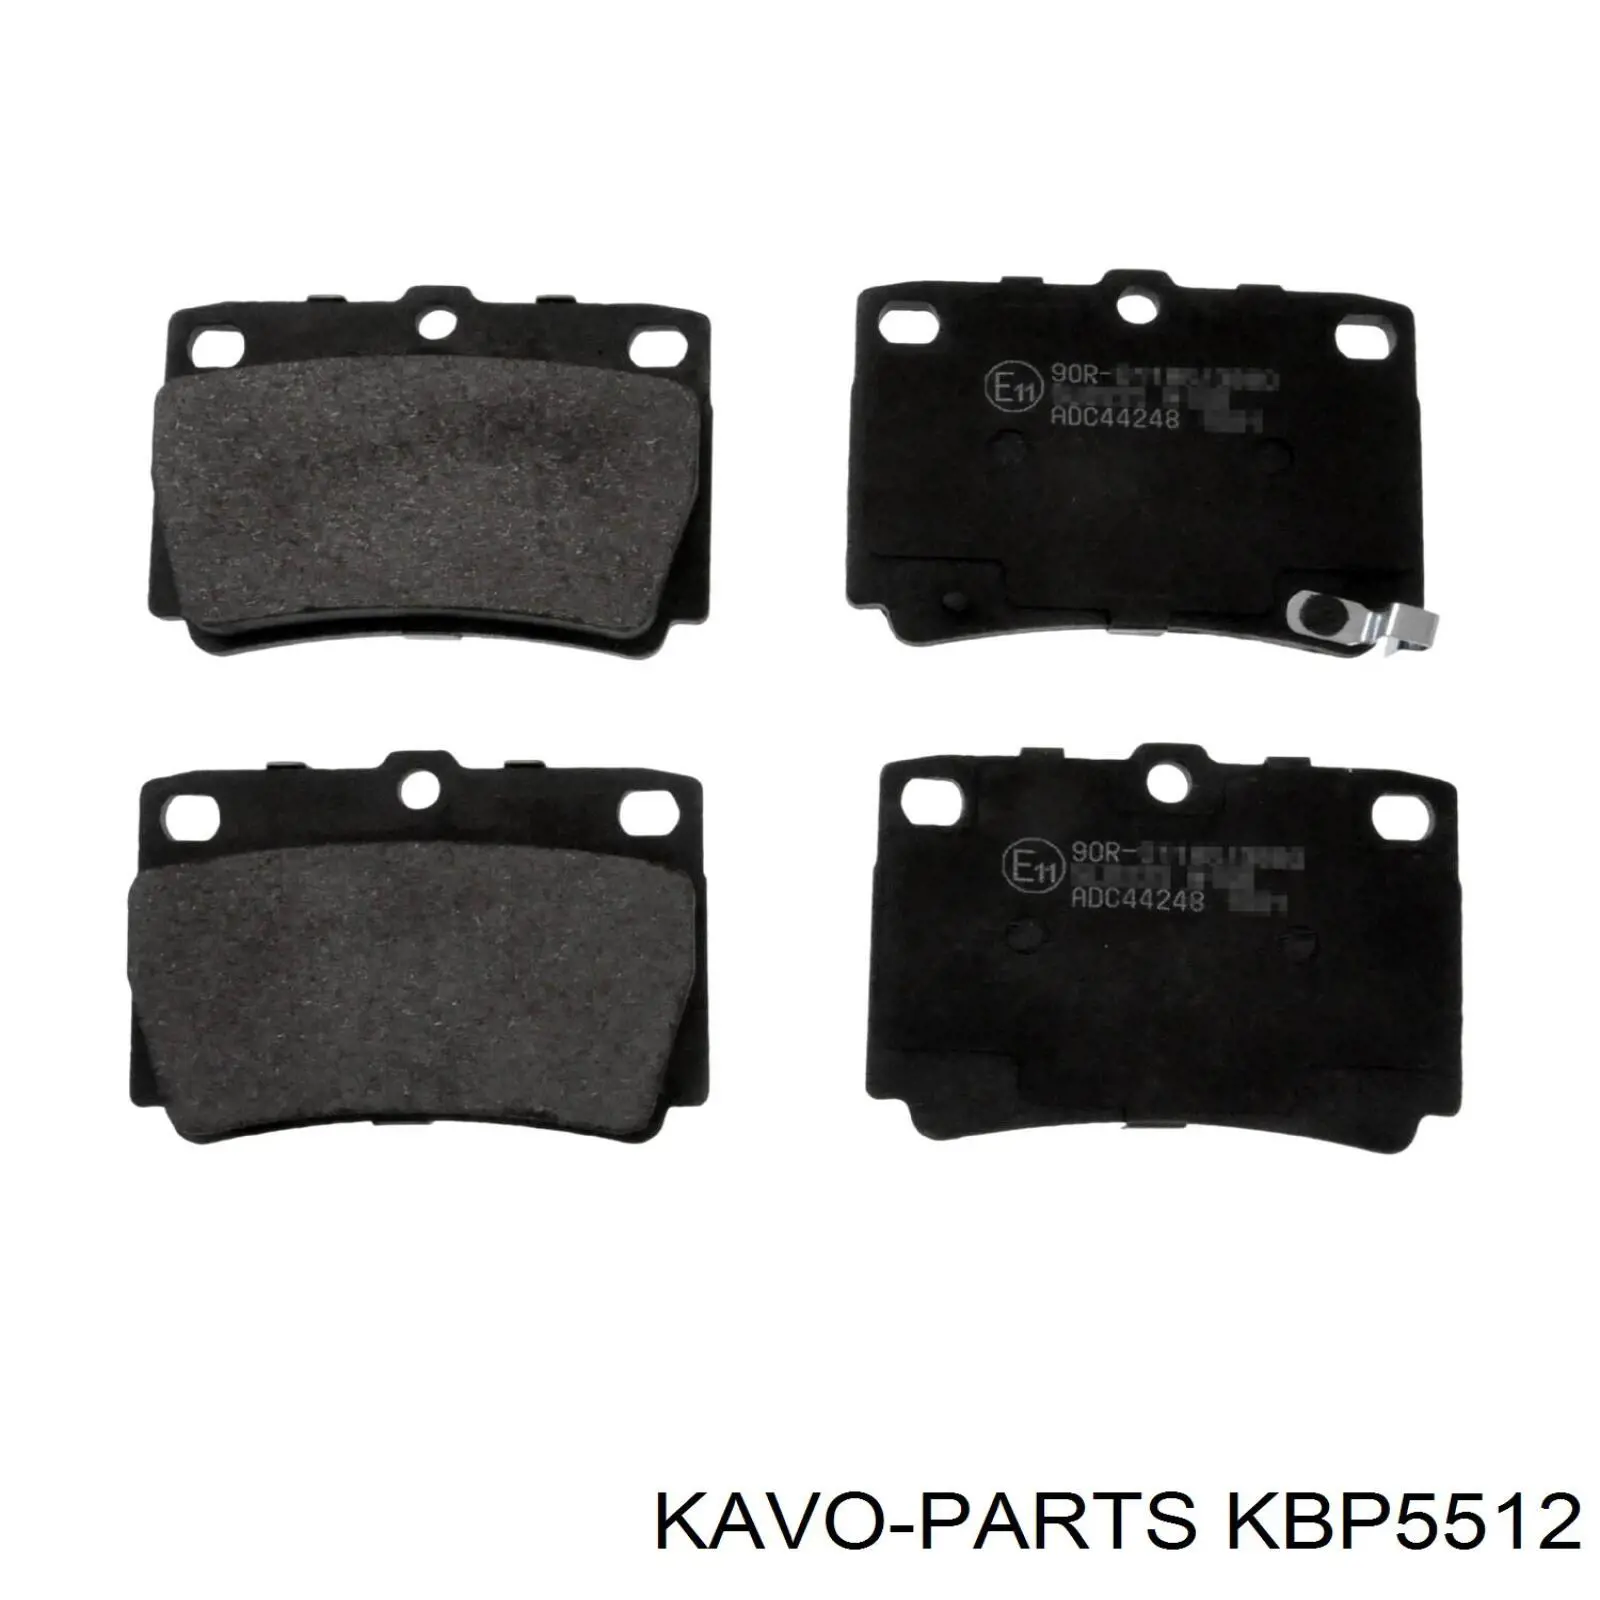 KBP-5512 Kavo Parts pastillas de freno traseras